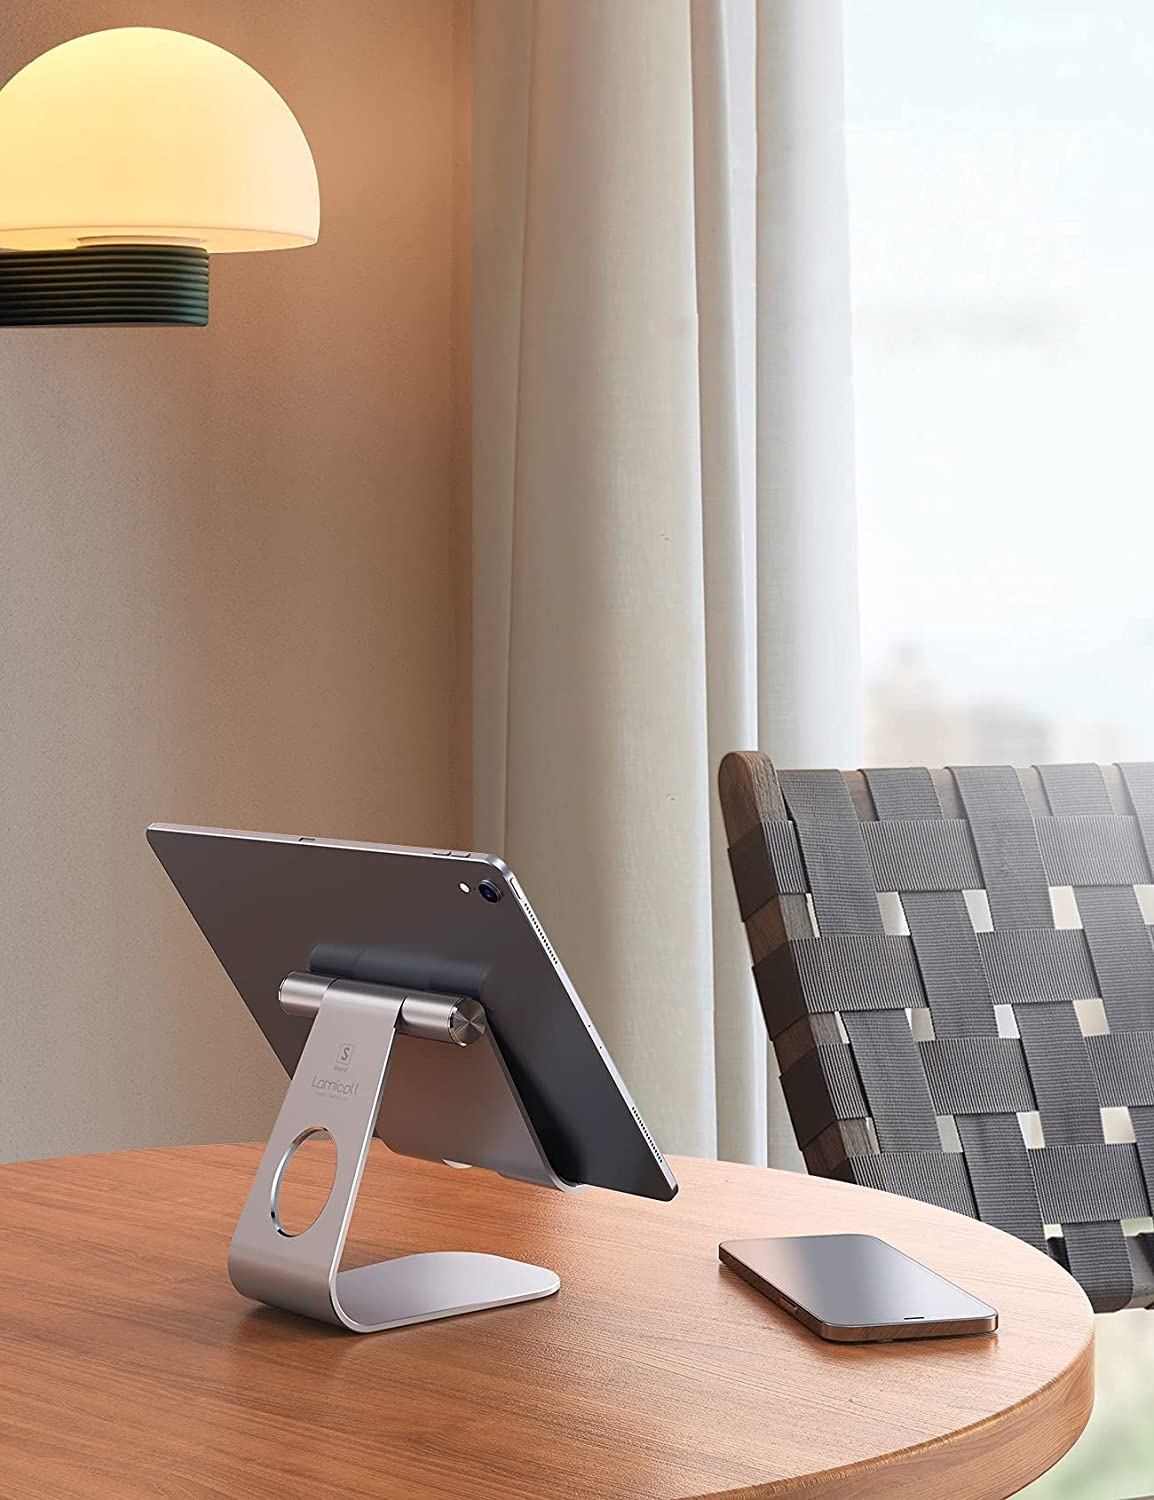 Lamicall Adjustable Tablet Stand Desktop Stand Holder Dock - Silver